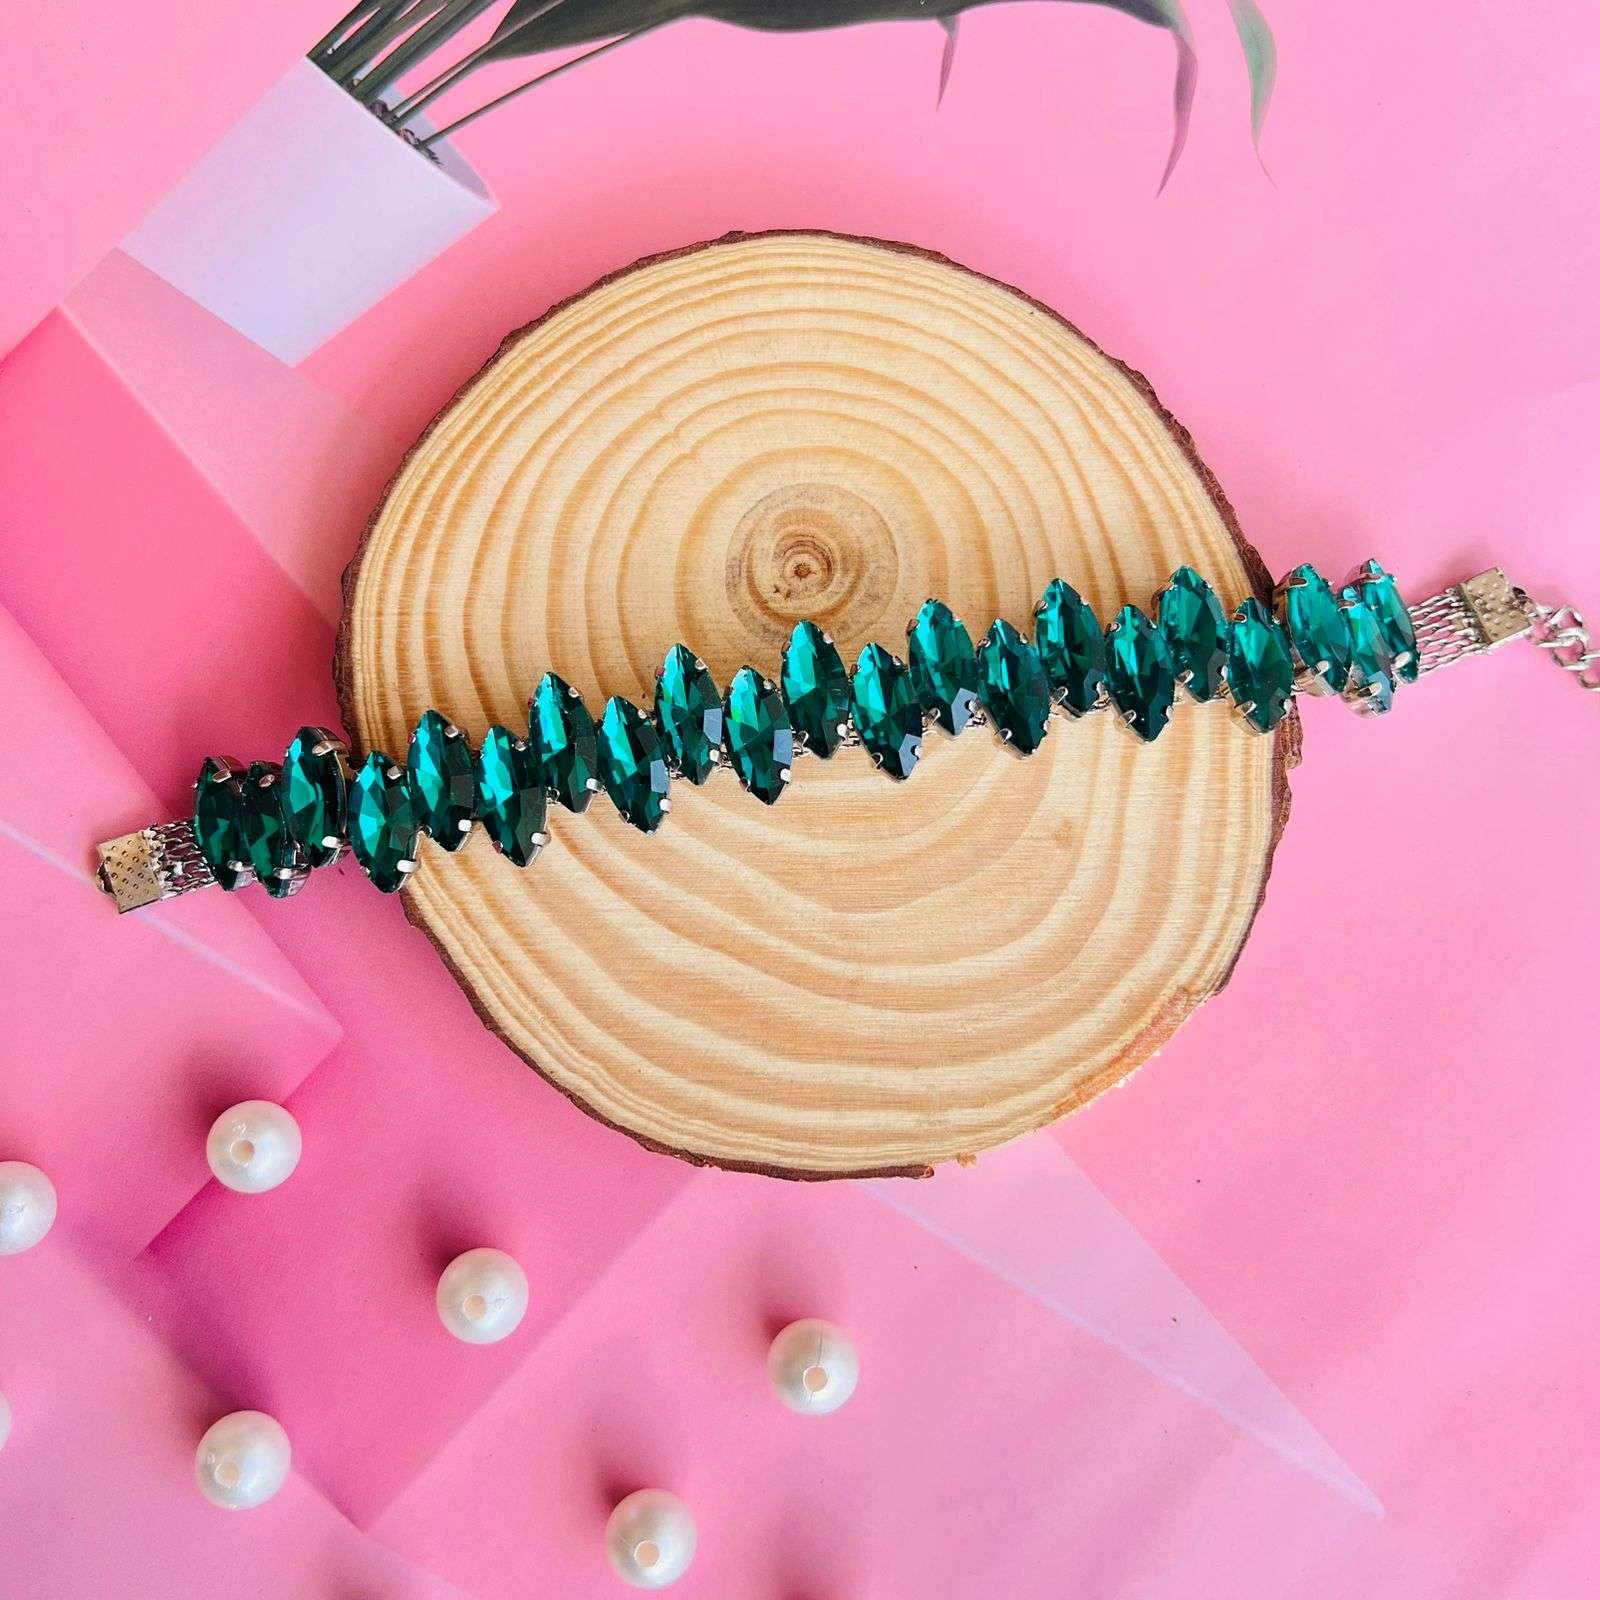 Layla cryastal bracelets velvet box by shweta